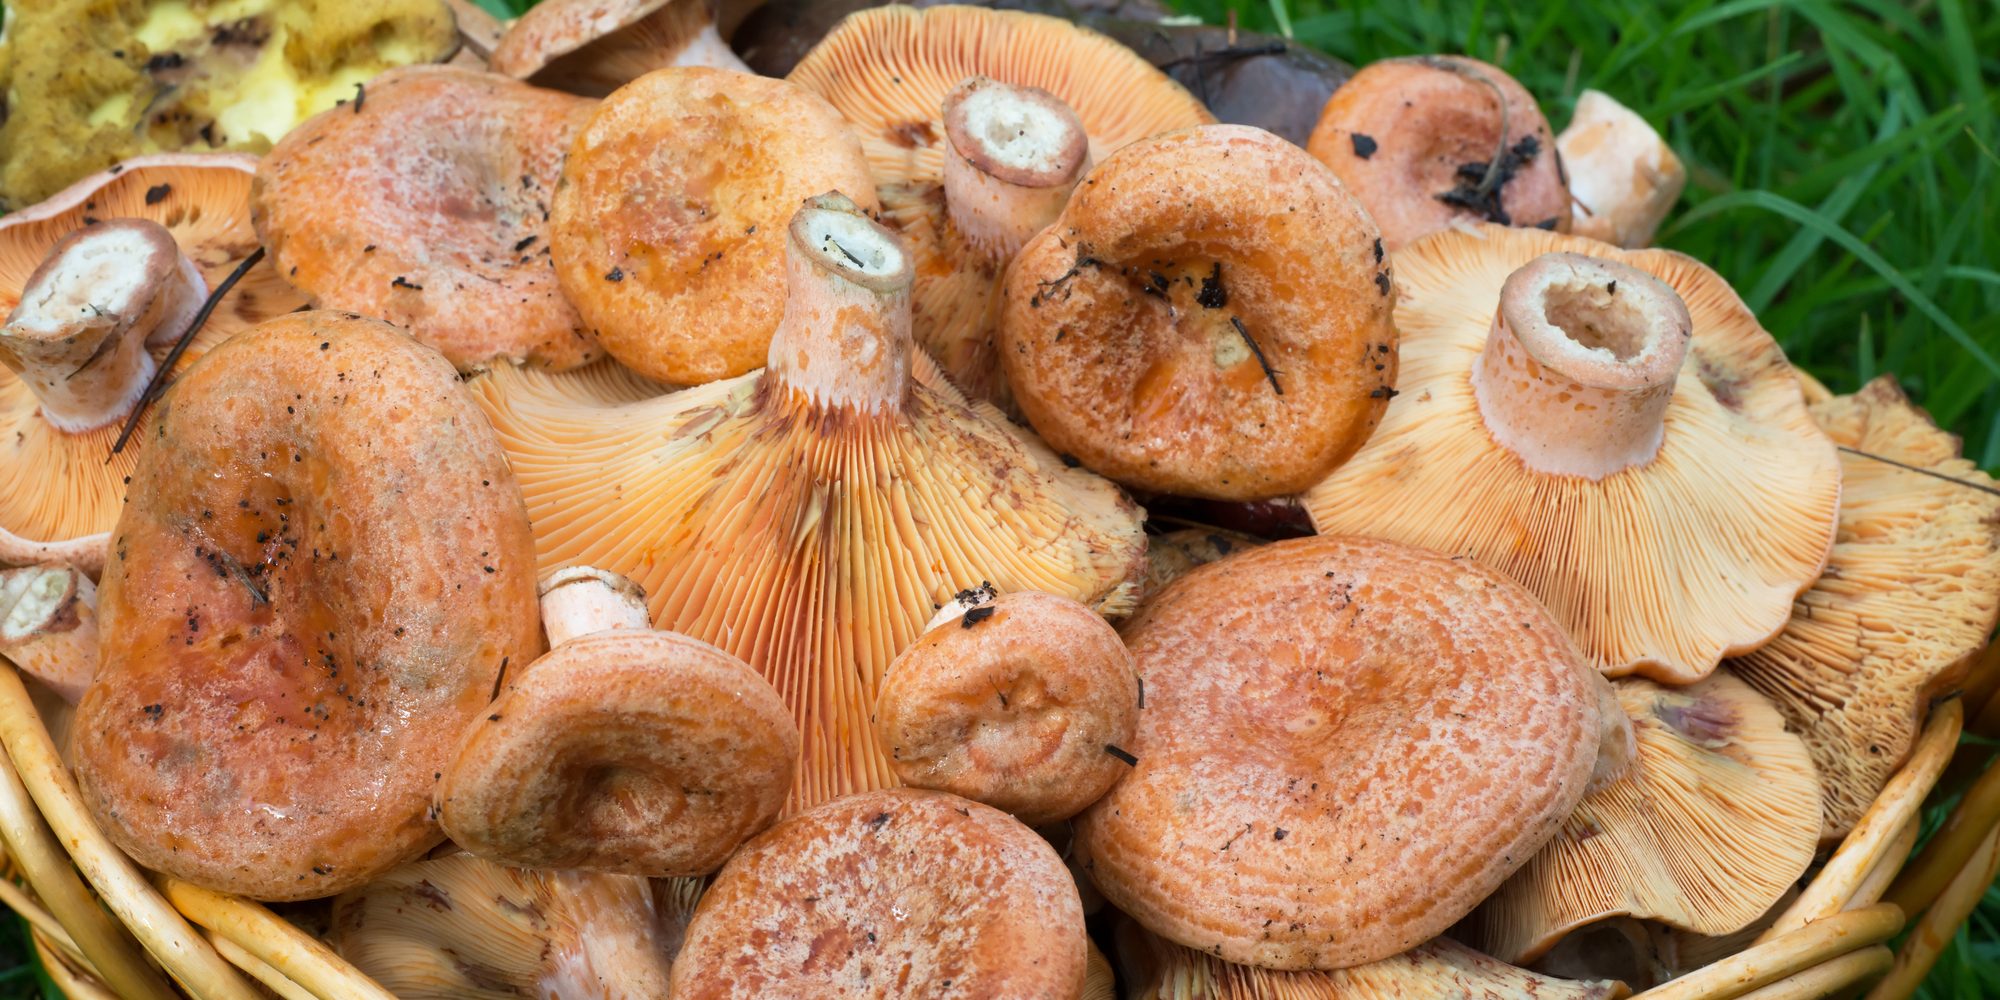 Картофельная латка с грибами: как правильно приготовить и солить рыжики